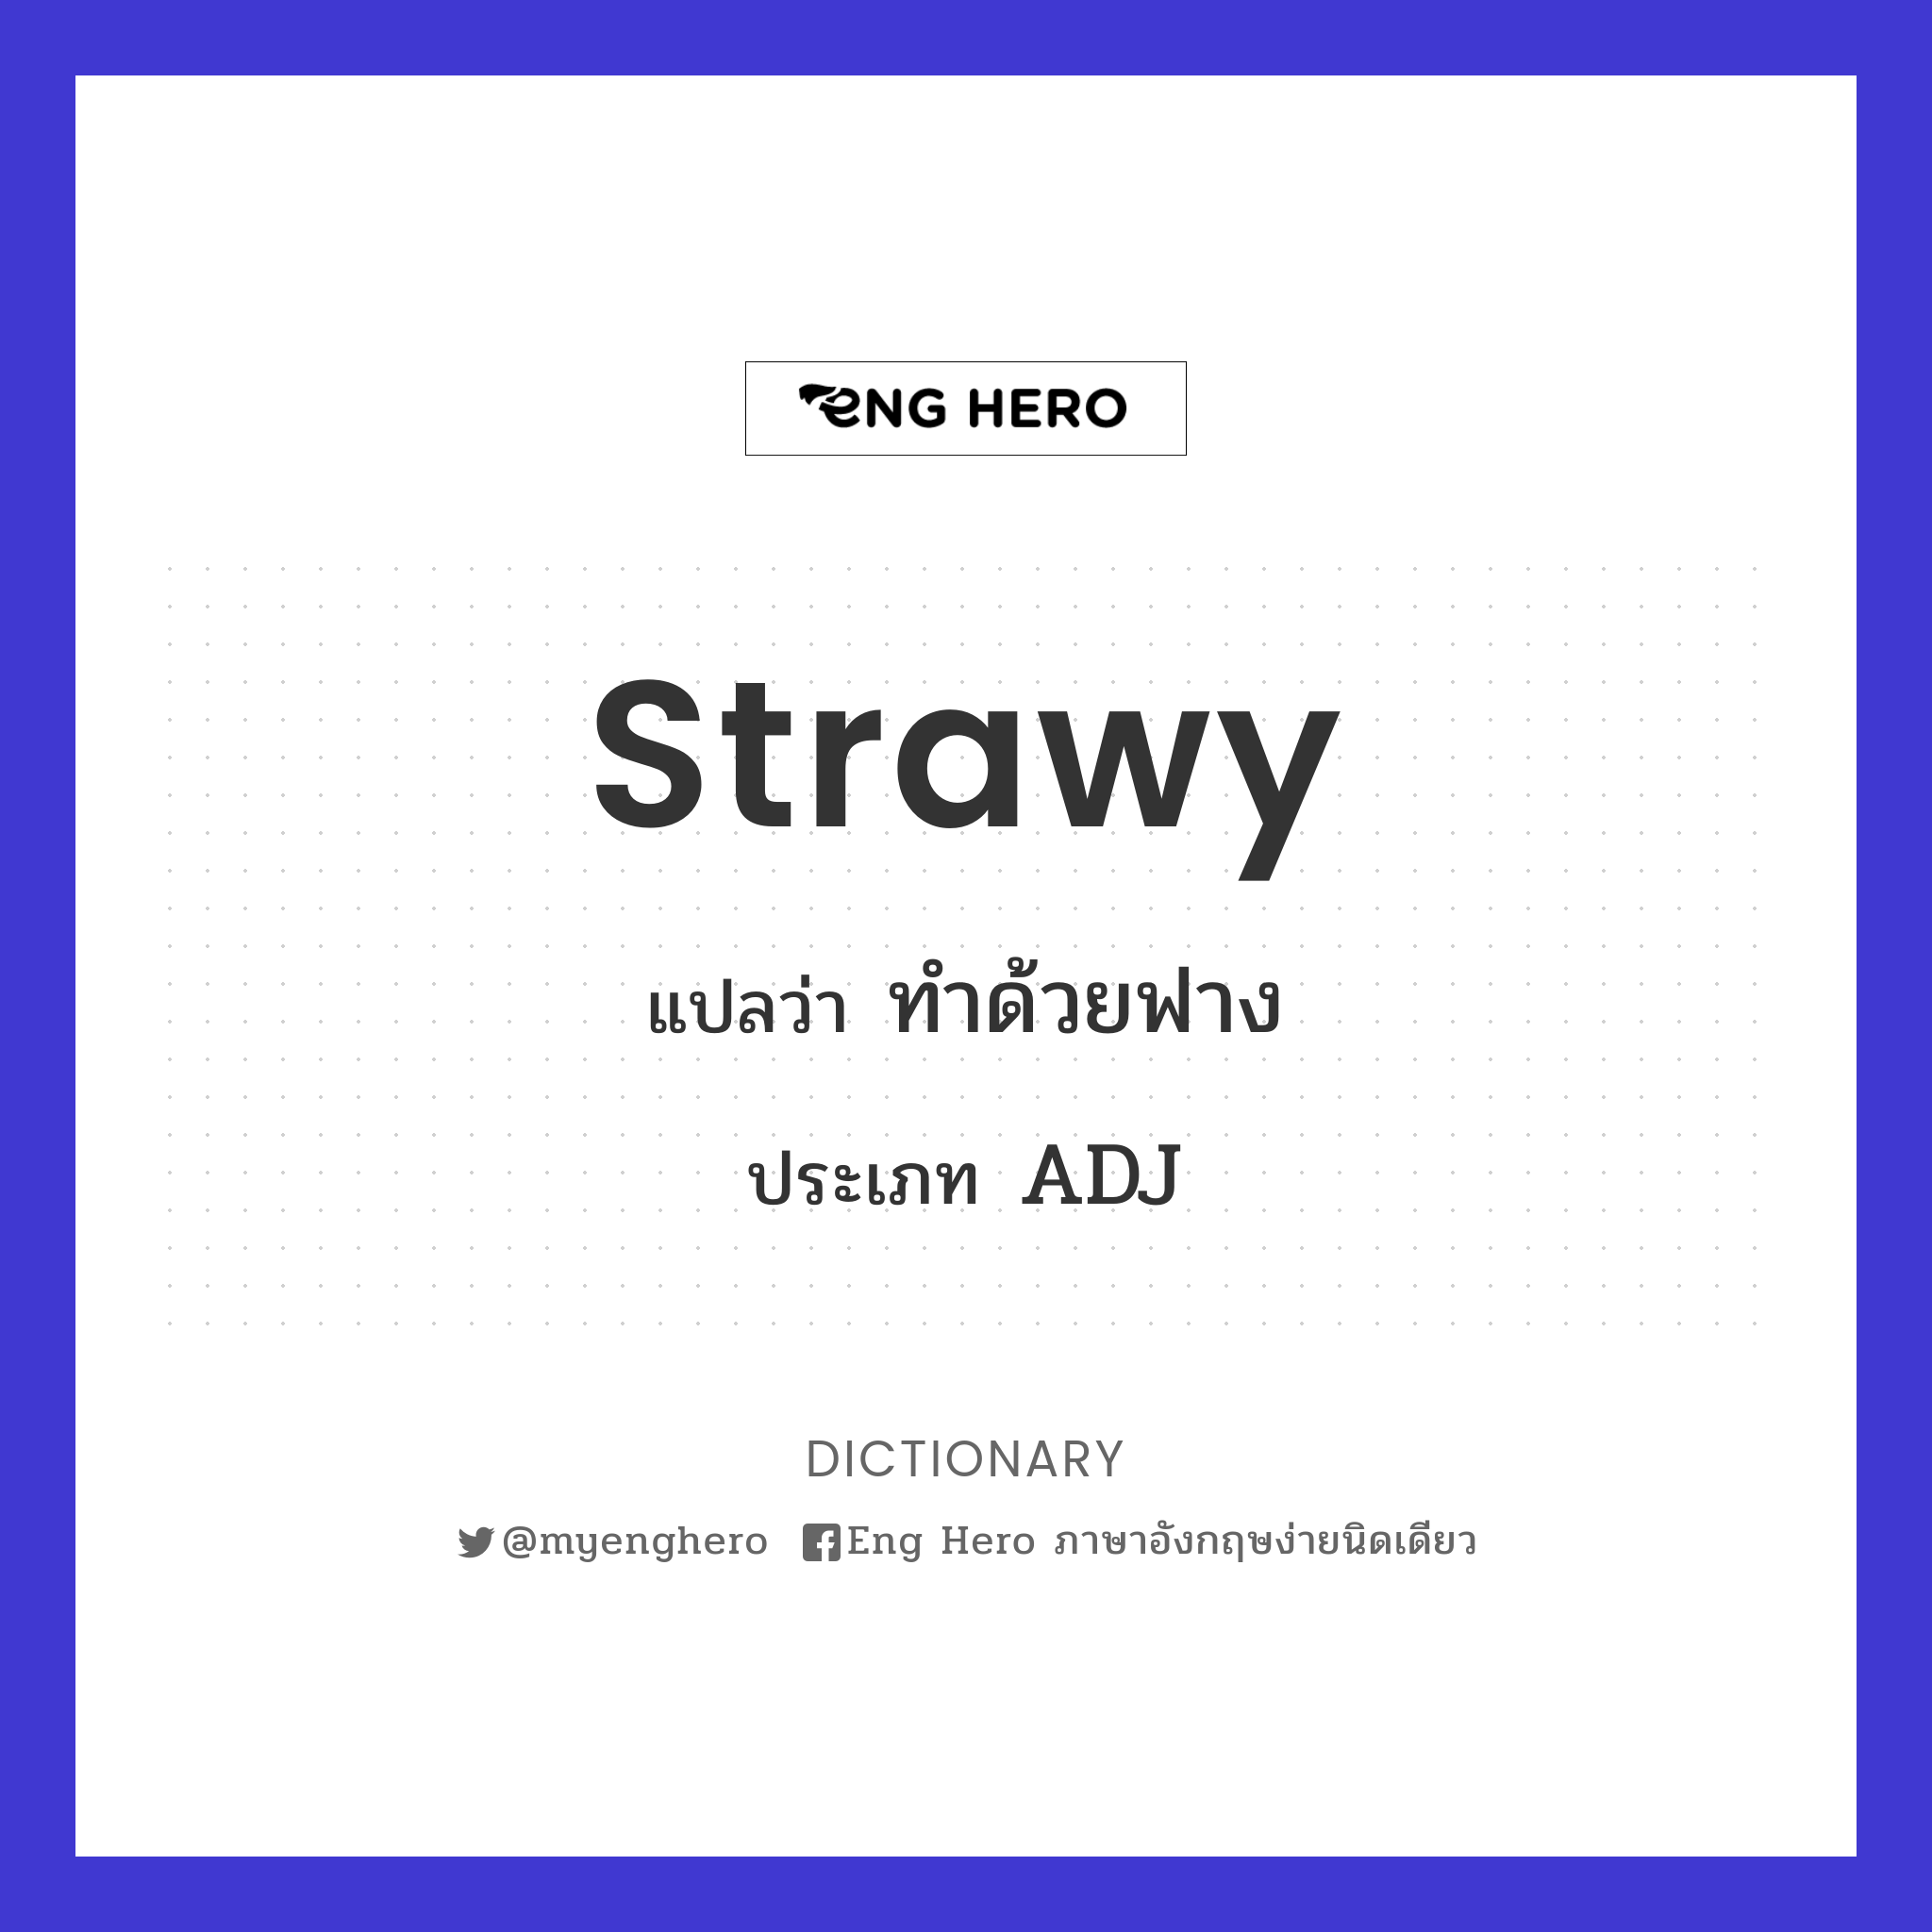 strawy